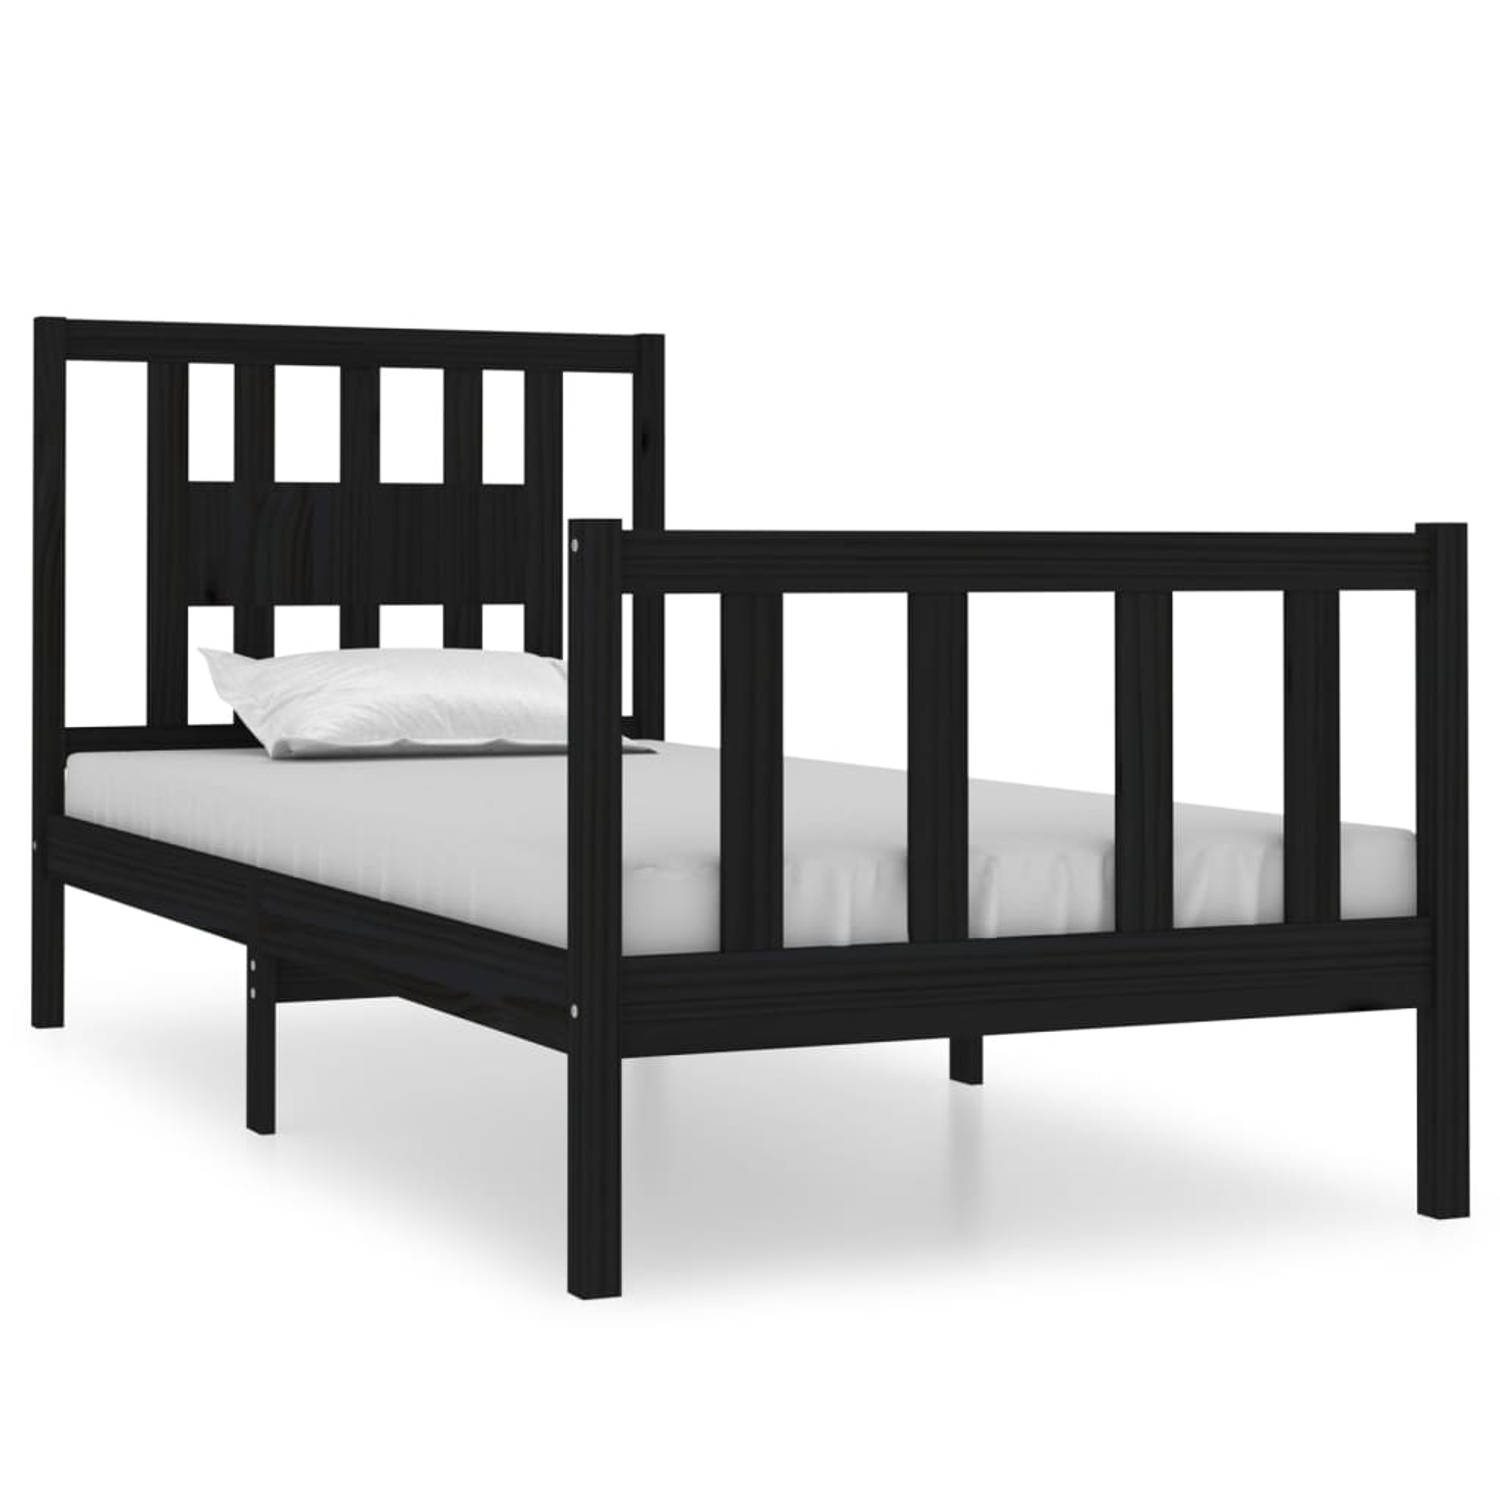 The Living Store Bedframe massief hout zwart 90x190 cm 3FT Single - Bedframe - Bedframes - Eenpersoonsbed - Bed - Bedombouw - Ledikant - Houten Bedframe - Eenpersoonsbedden - Bedde